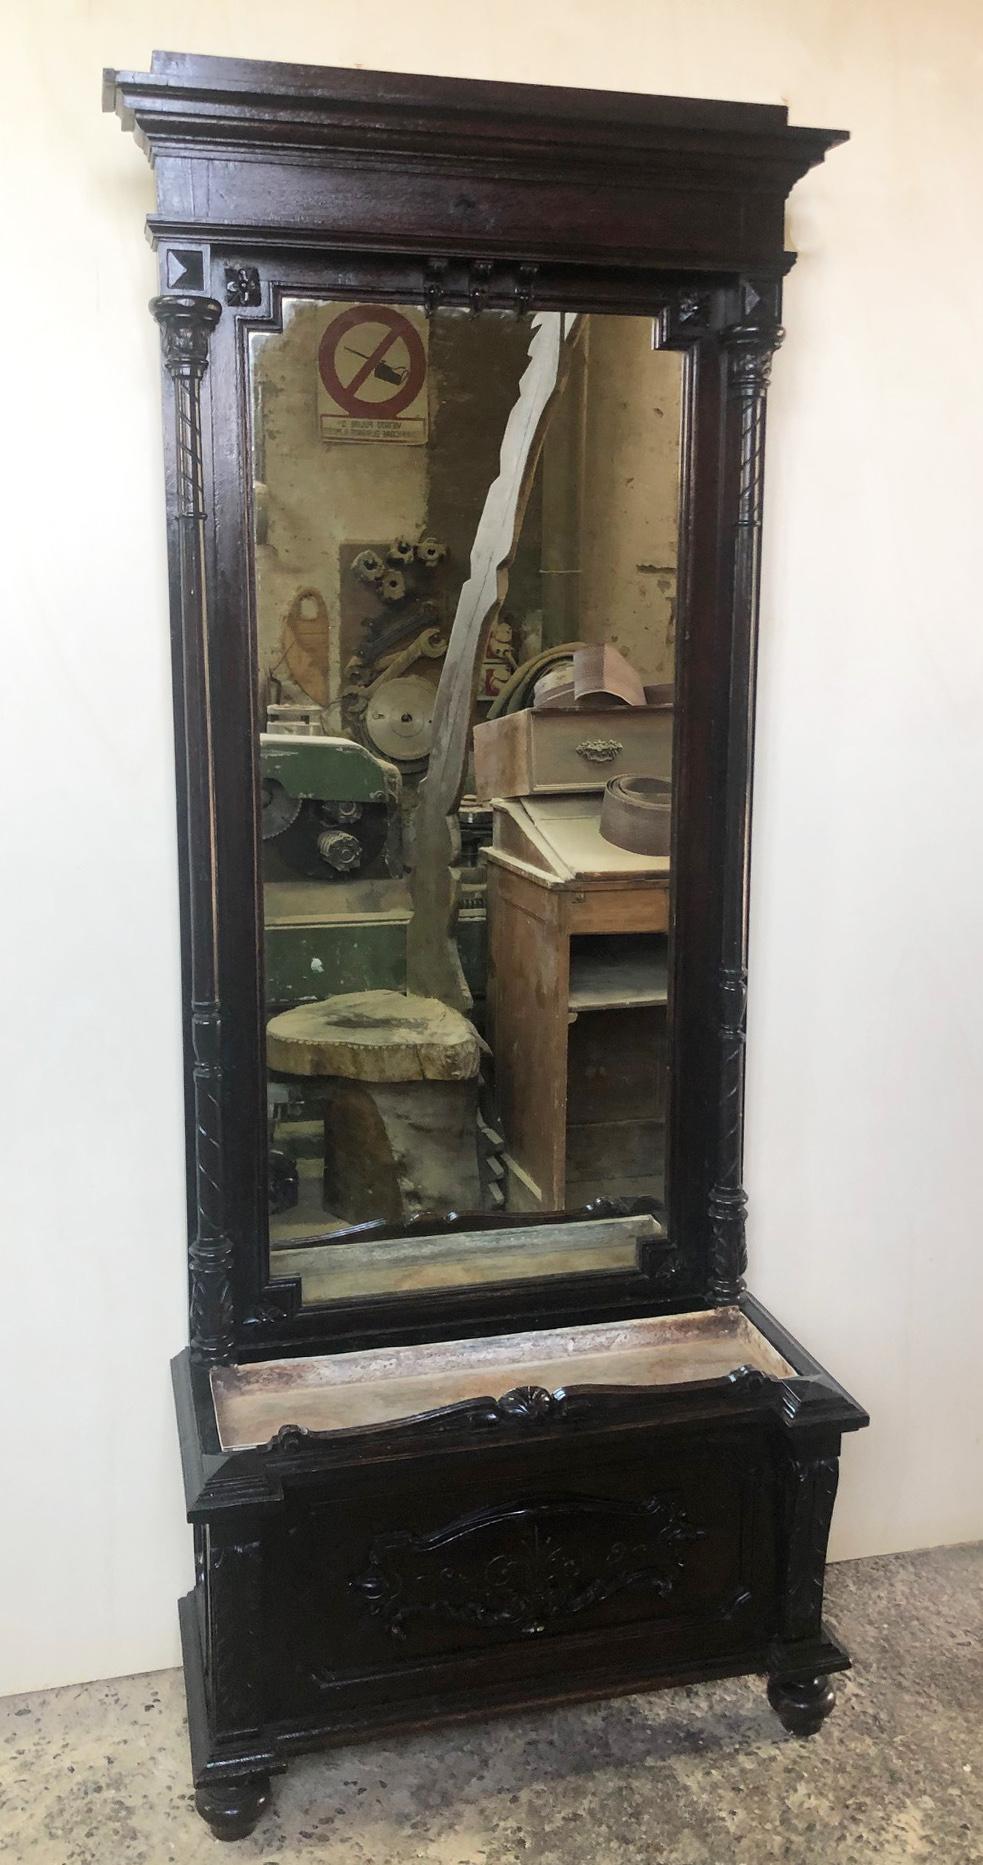 Rare meuble italien de 1880, ébénisé, avec miroir et sculptures d'origine. Porte-fleurs en bas.
Le cabinet se trouvait à l'entrée d'une grande villa de campagne florentine, avec un vase de fleurs au fond.

Pour connaître le coût du transport vers